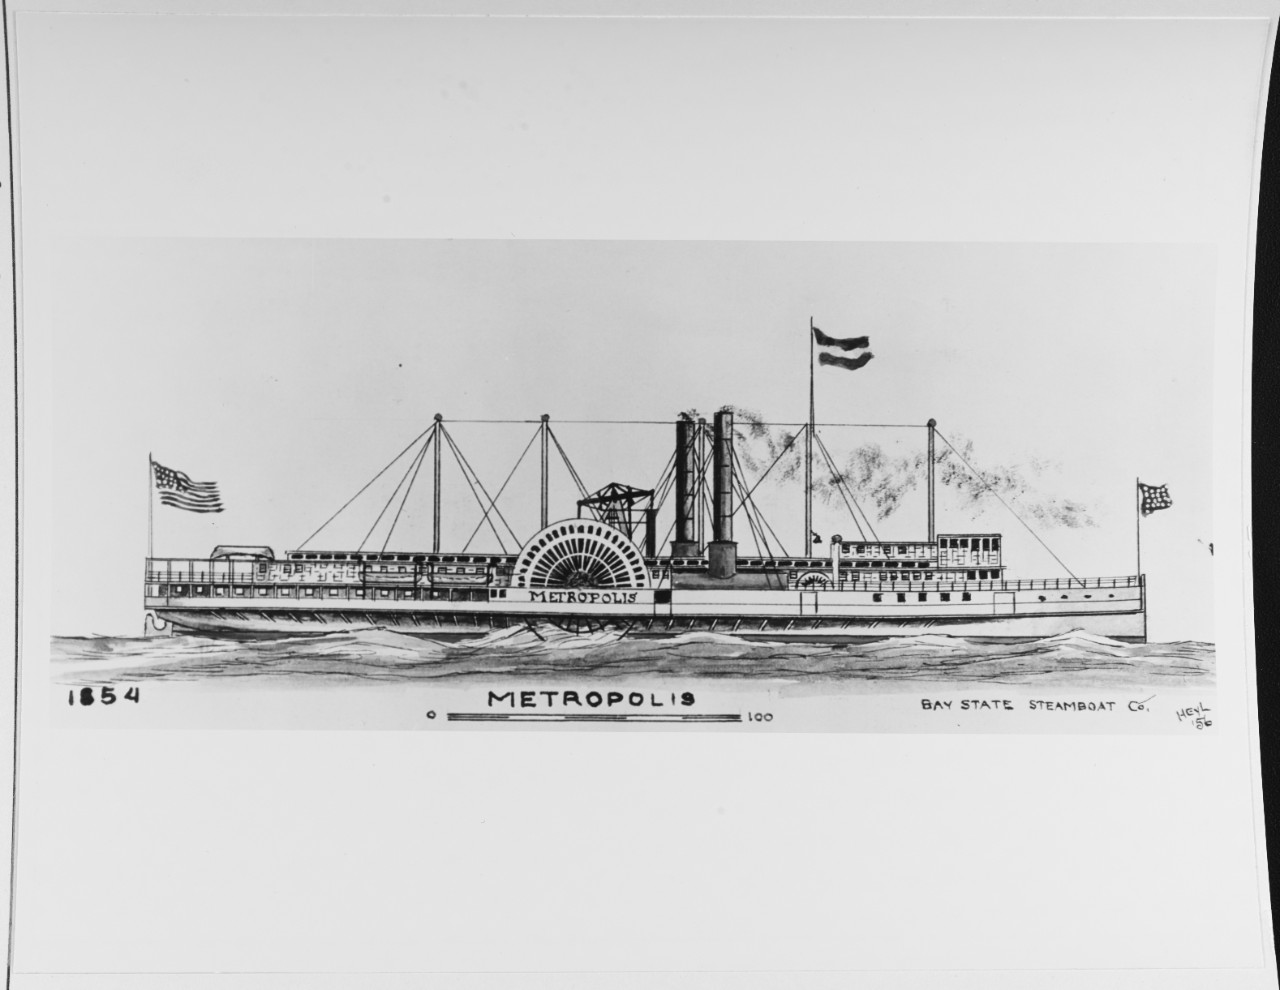 METROPOLIS (American merchant steamer, 1854-1879)